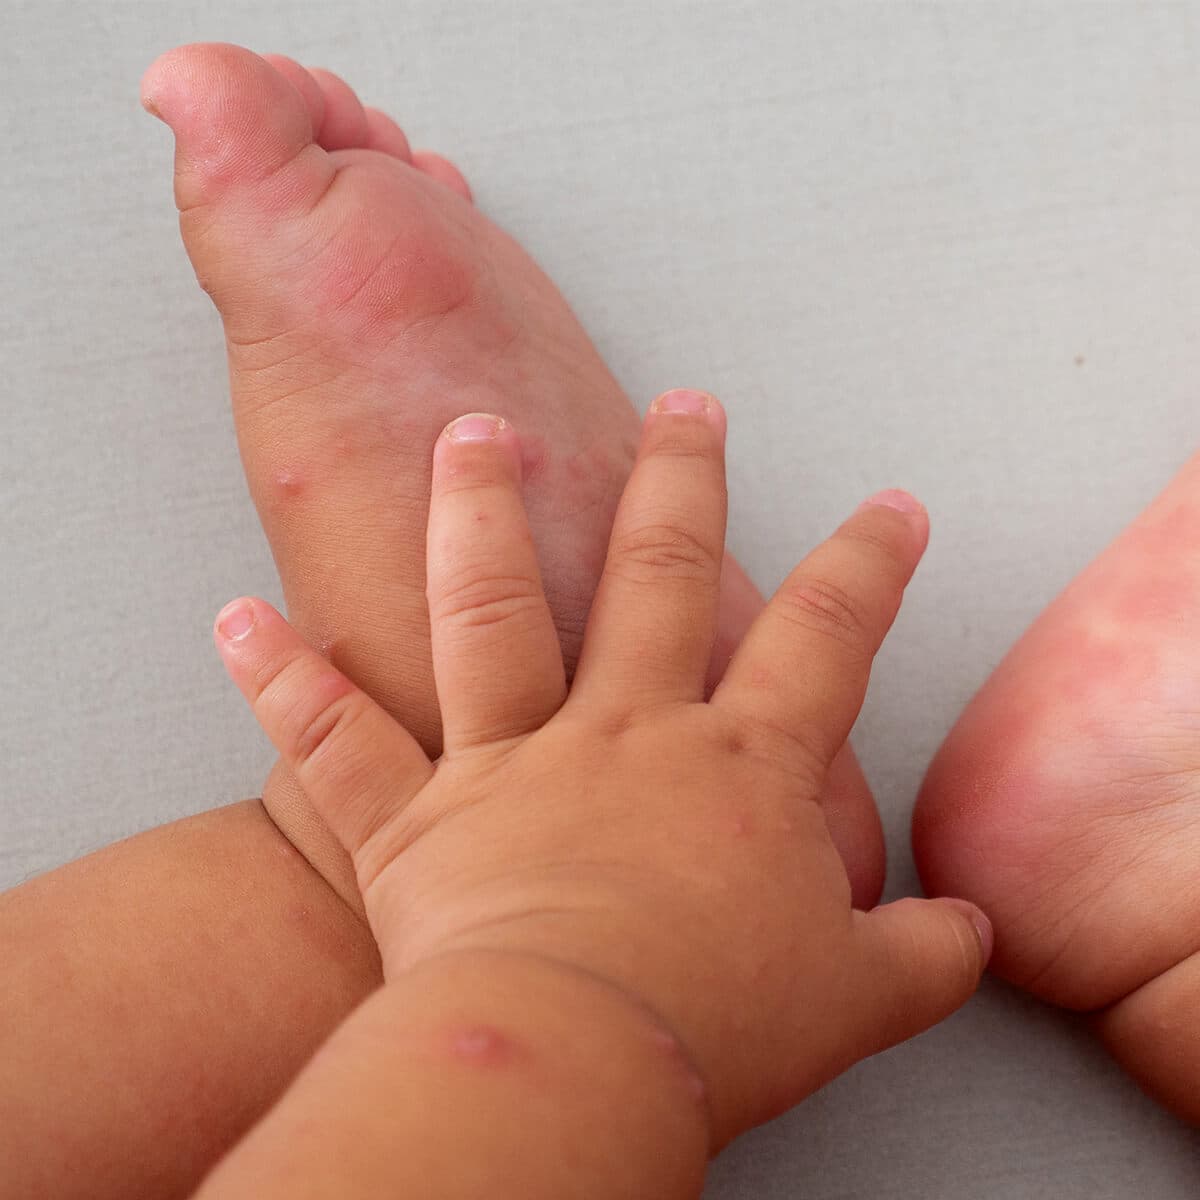 بیماری دست پا دهان در کودکان (HFM)  چیست؟